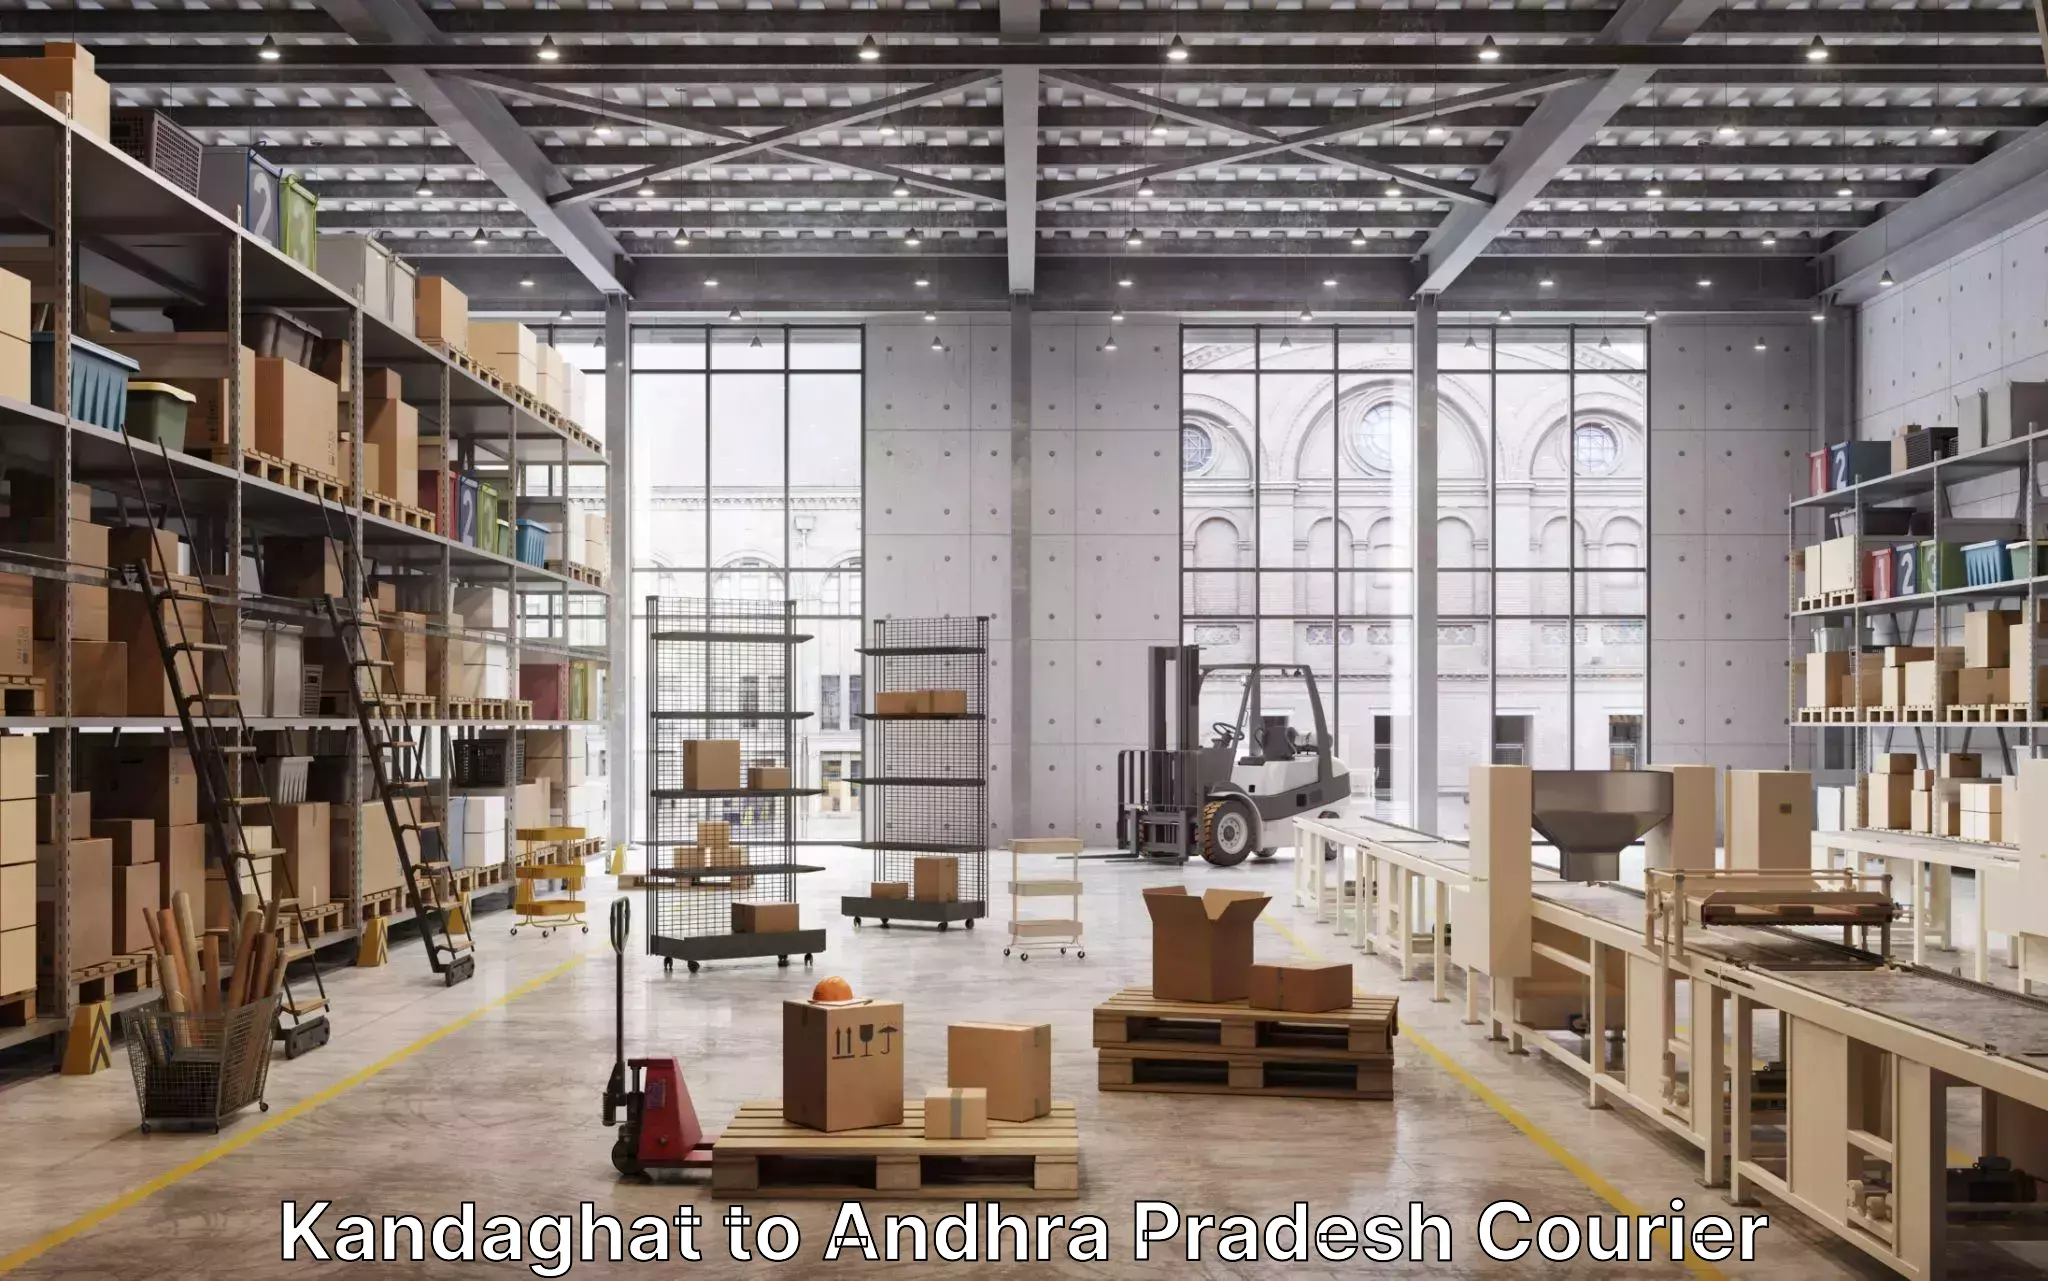 Furniture transport specialists Kandaghat to Tada Tirupati